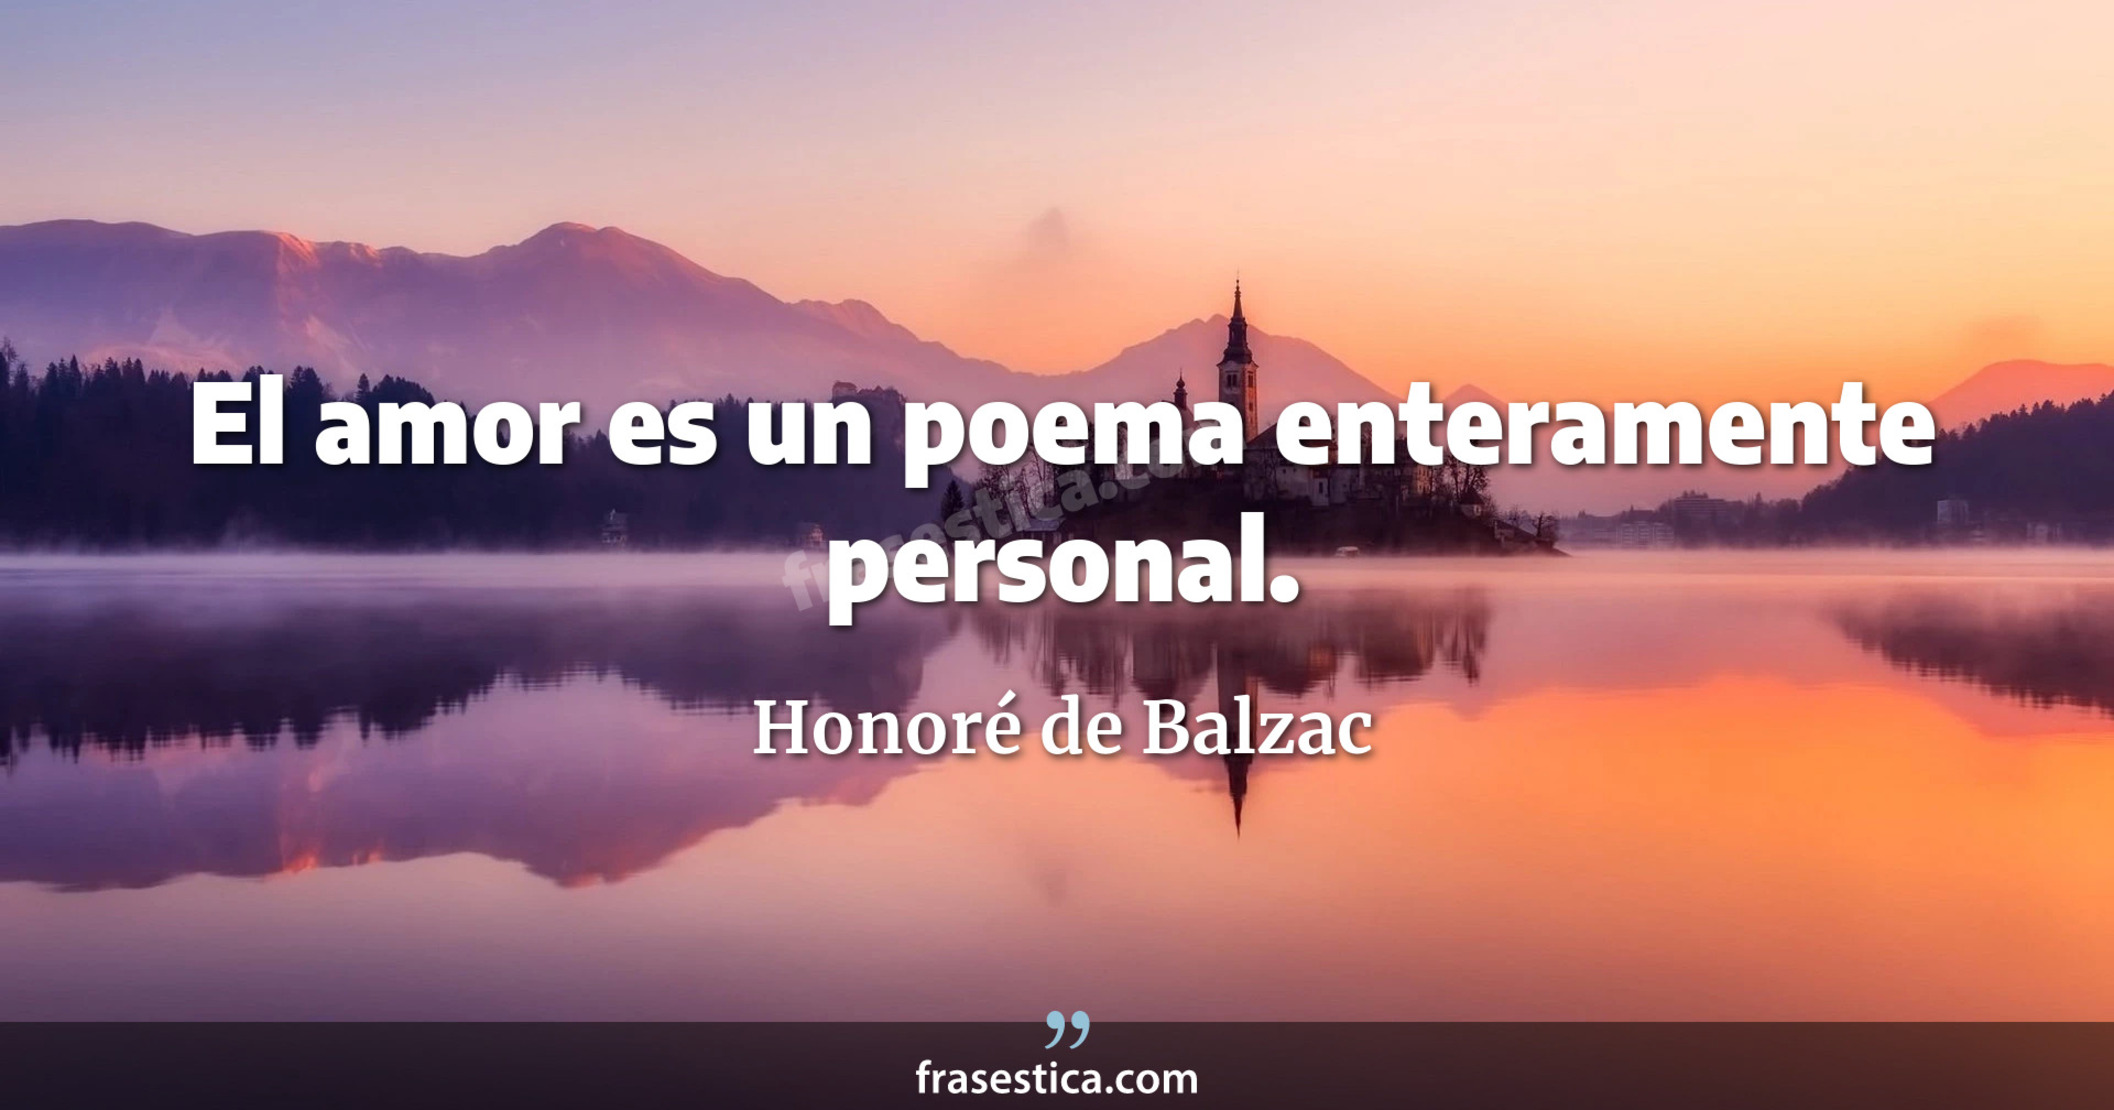 El amor es un poema enteramente personal. - Honoré de Balzac